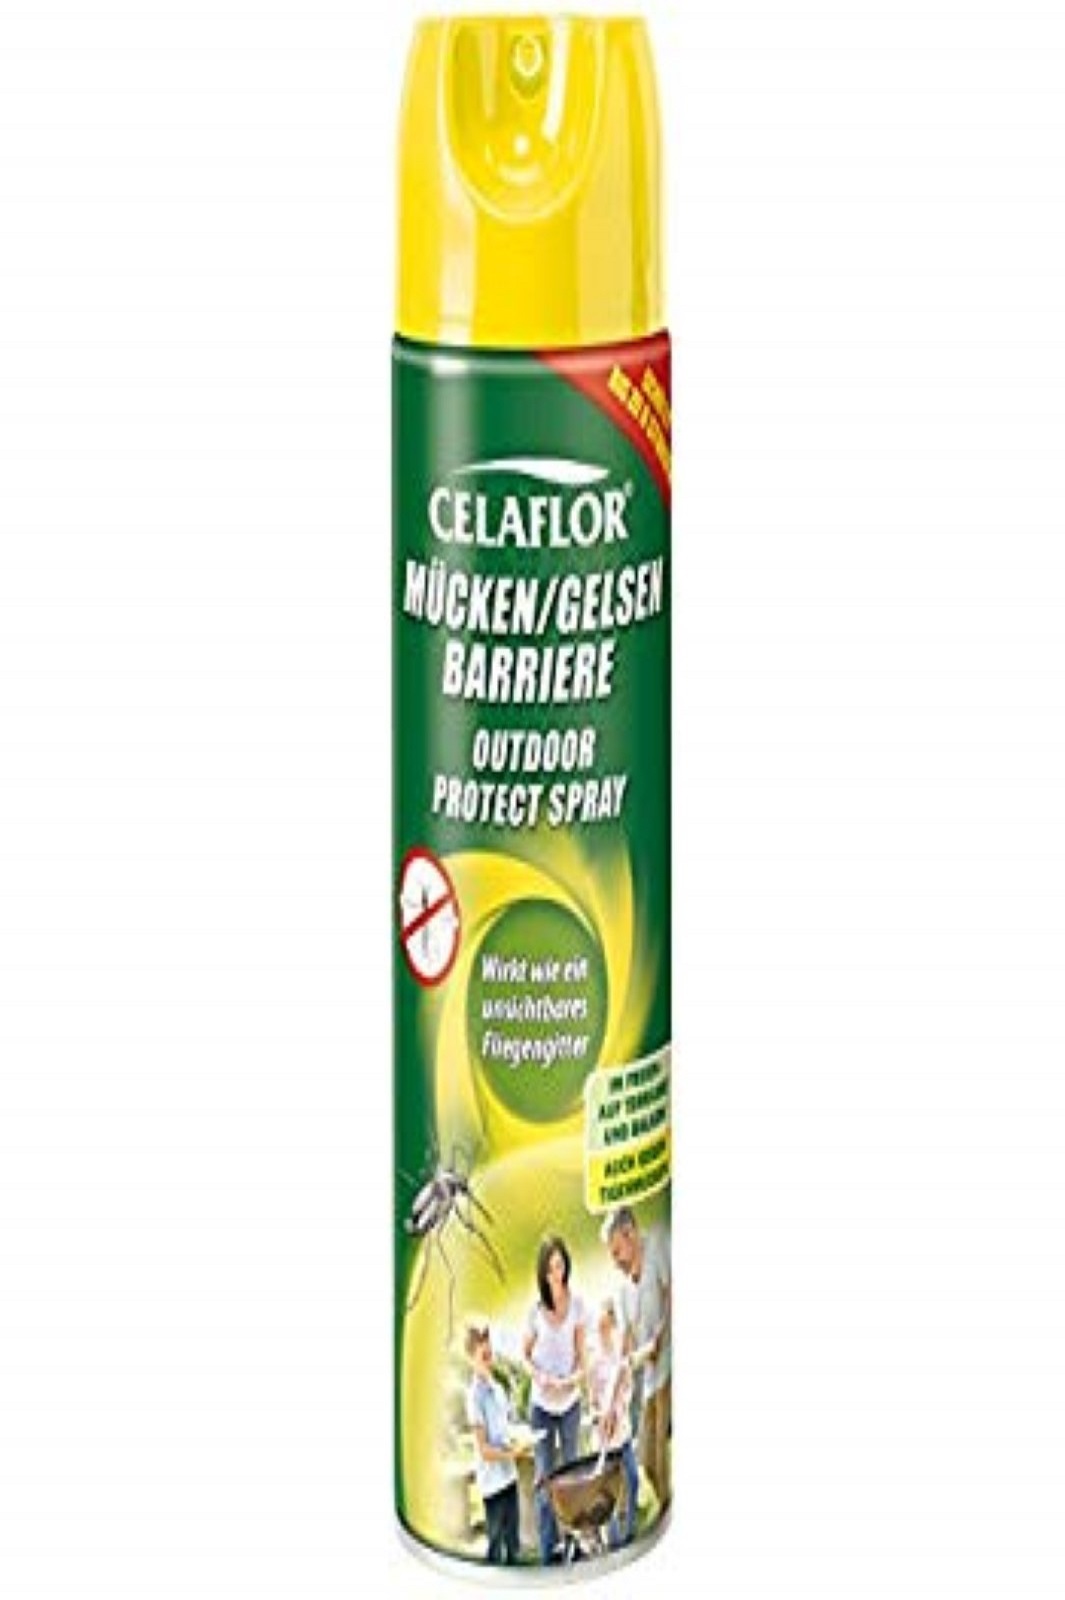 Celaflor Mücken/Gelsen Barriere Spray 400ml